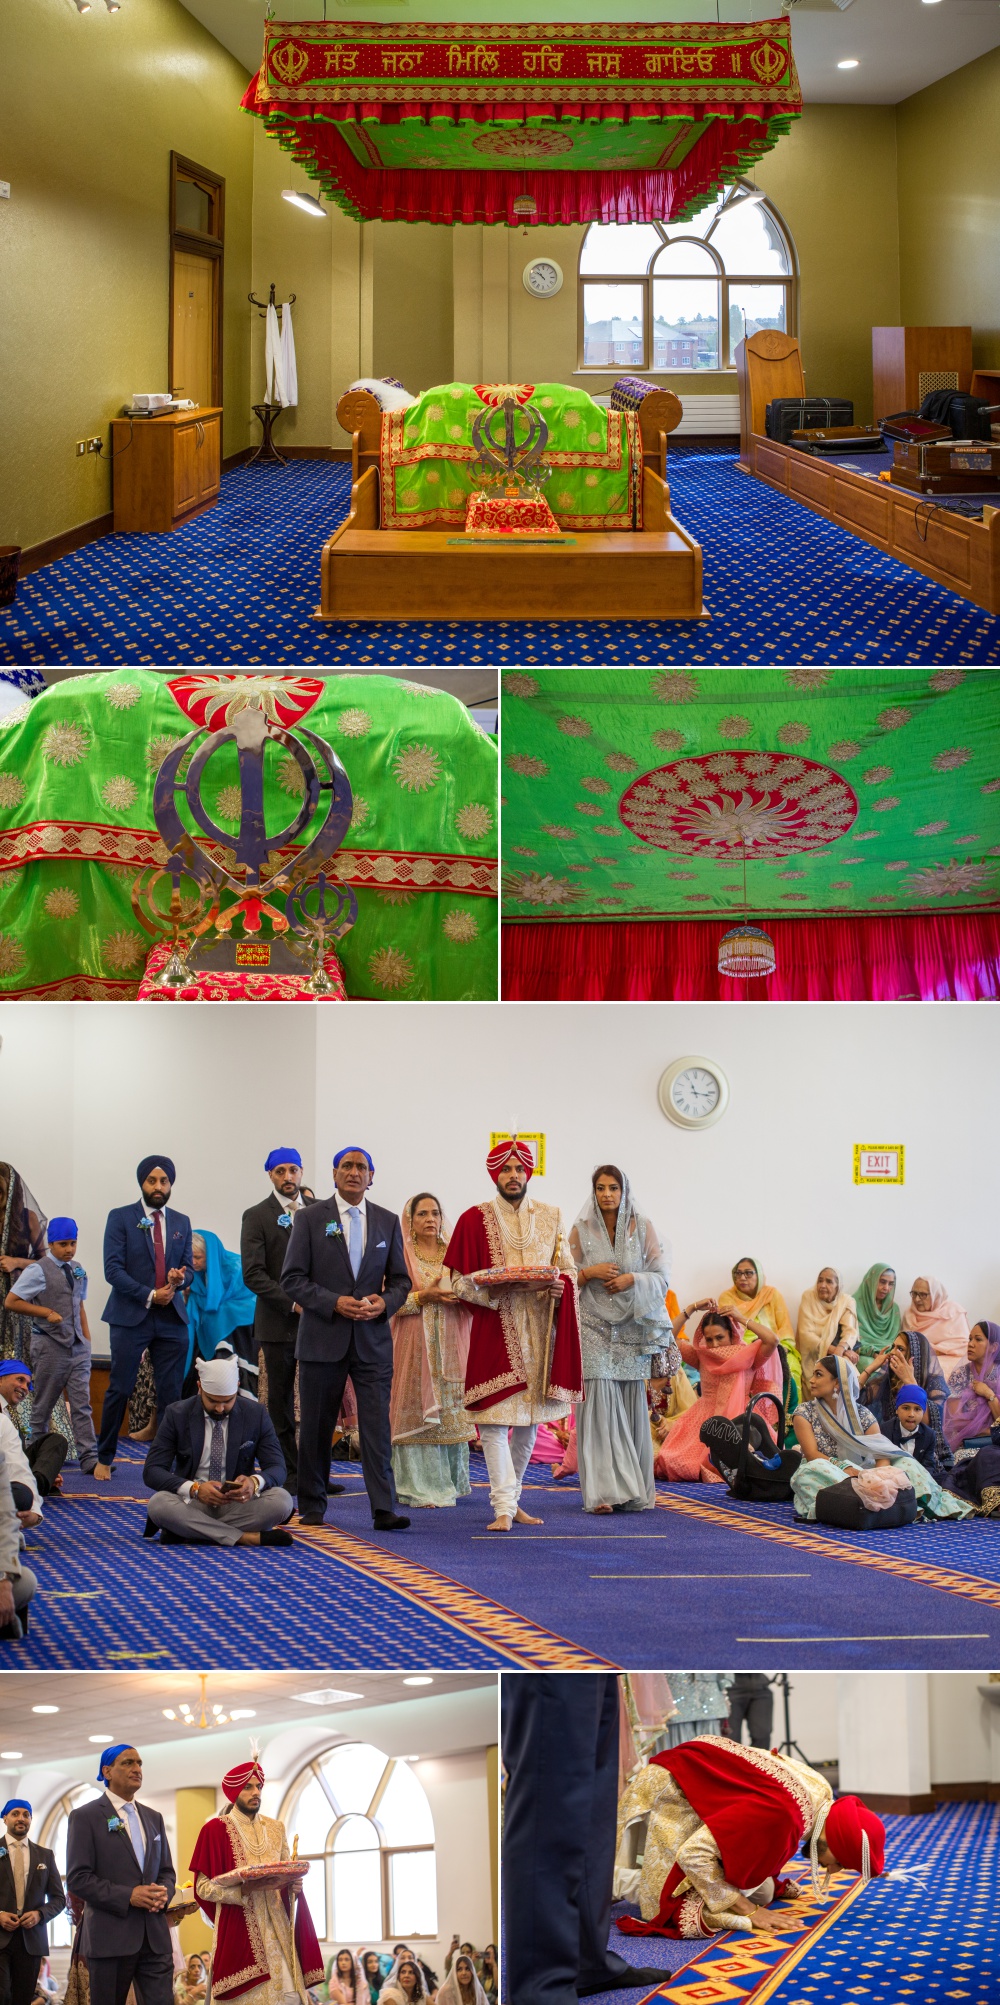 Sikh Wedding Photography at Nailcote Hall Bally and Sukhpreet 13 1